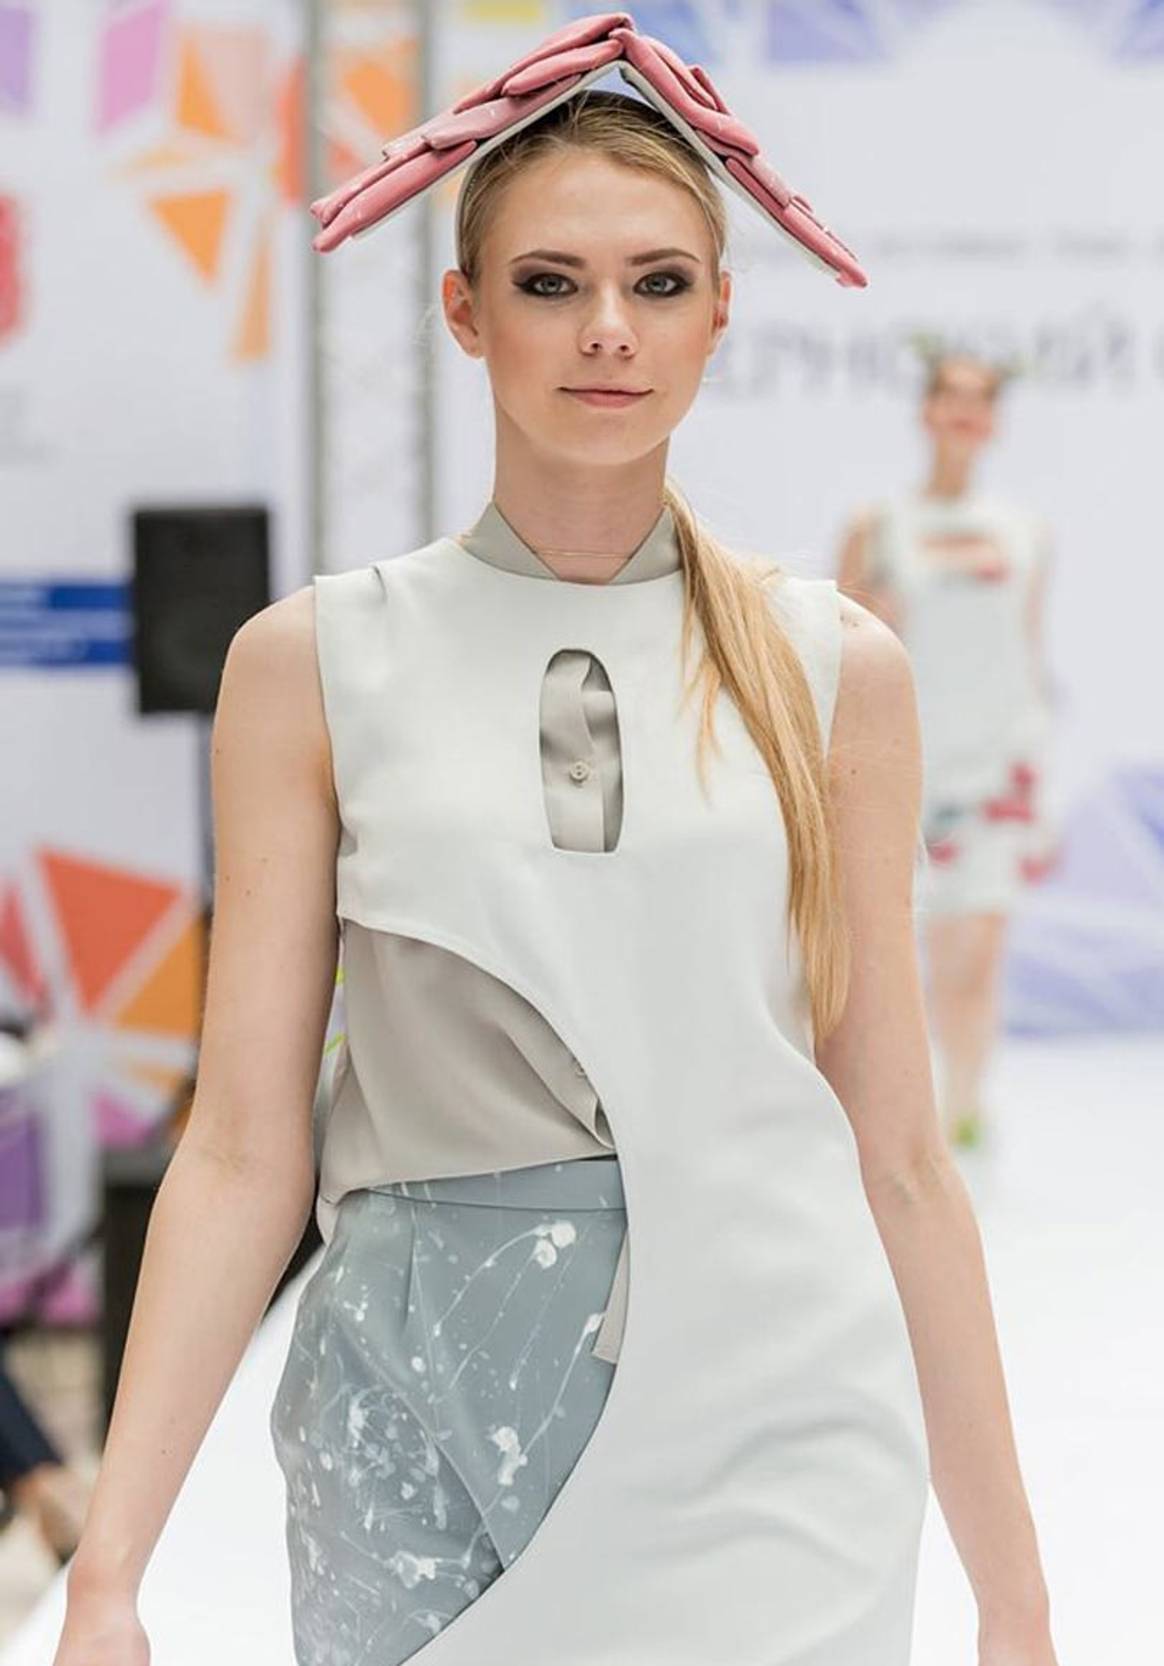 В Туле завершился Международный фестиваль моды "Губернский стиль-2017"